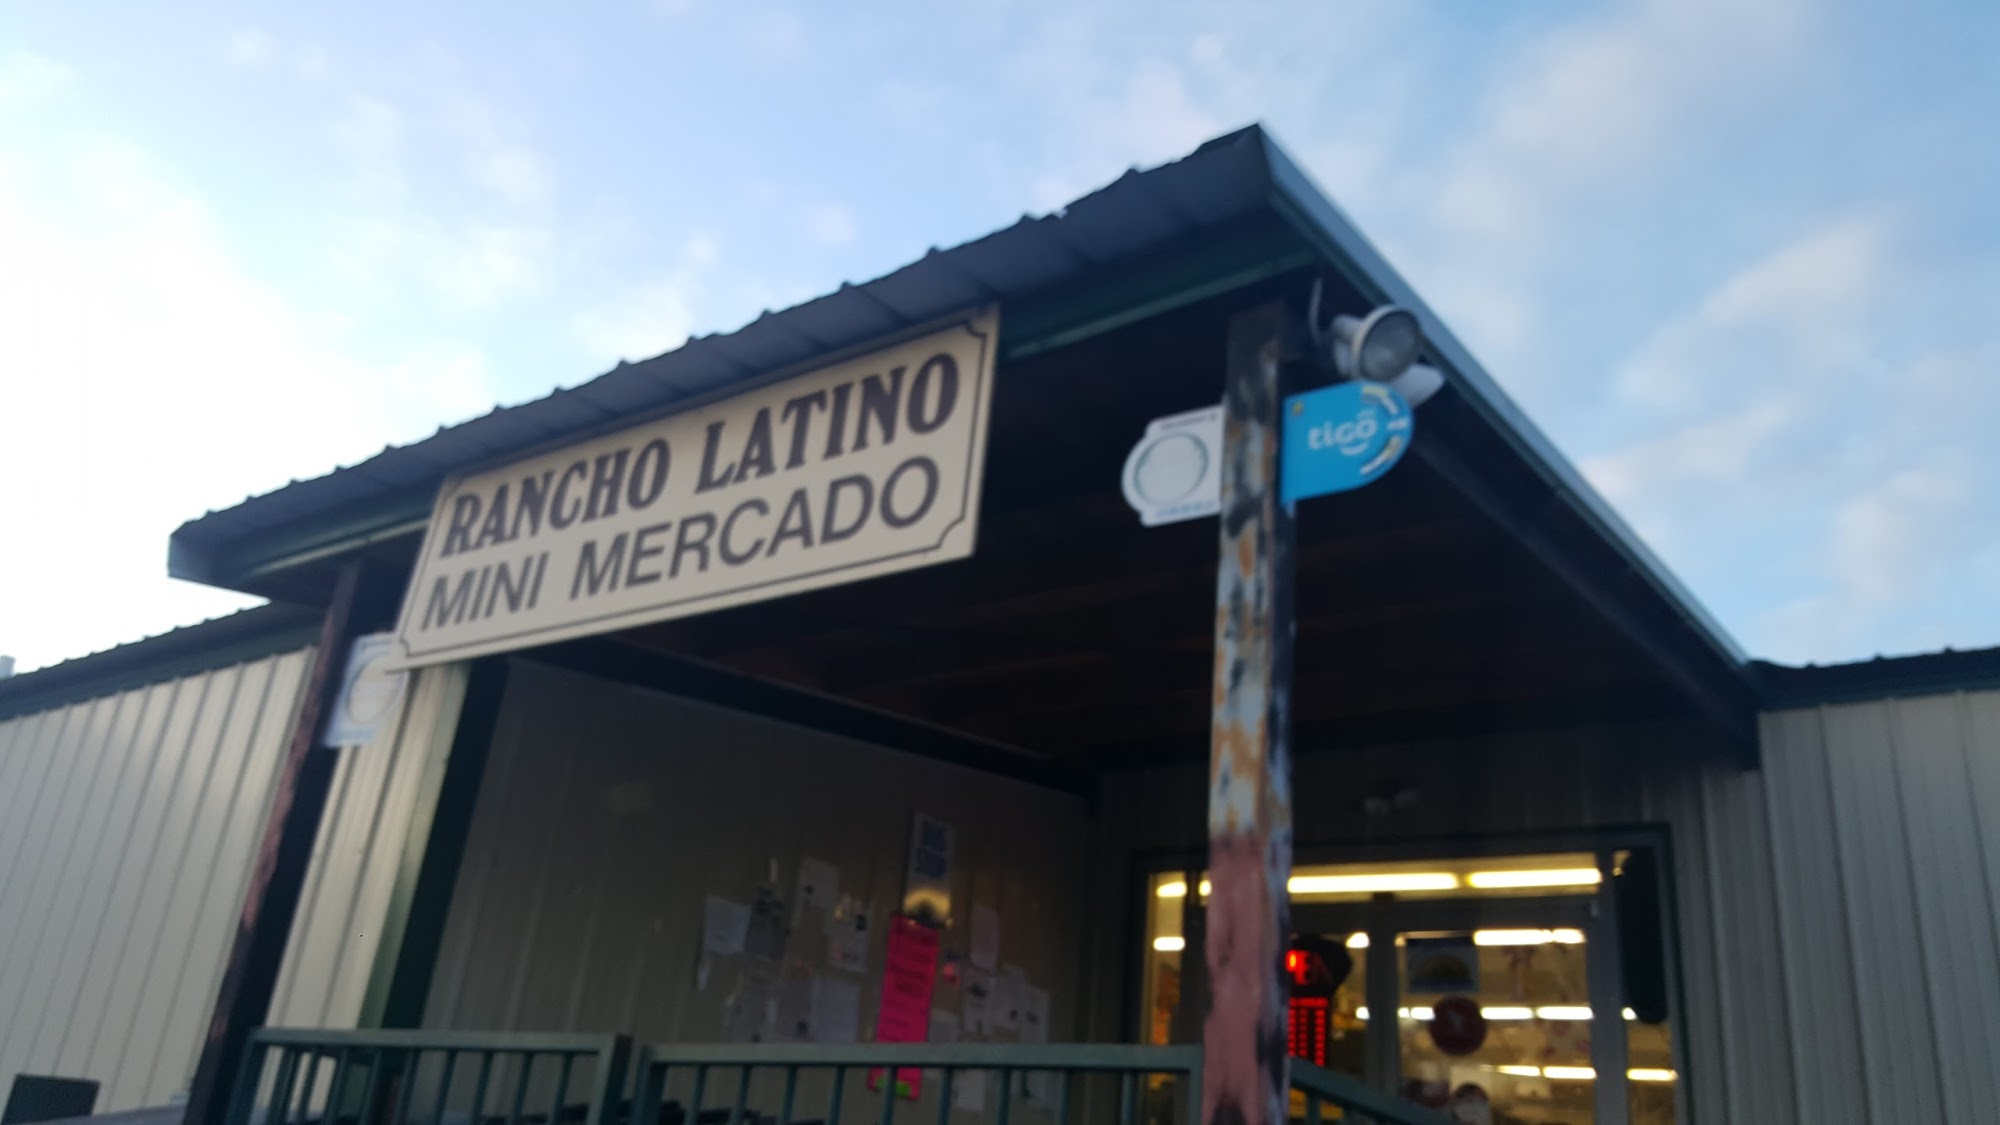 Rancho Latino